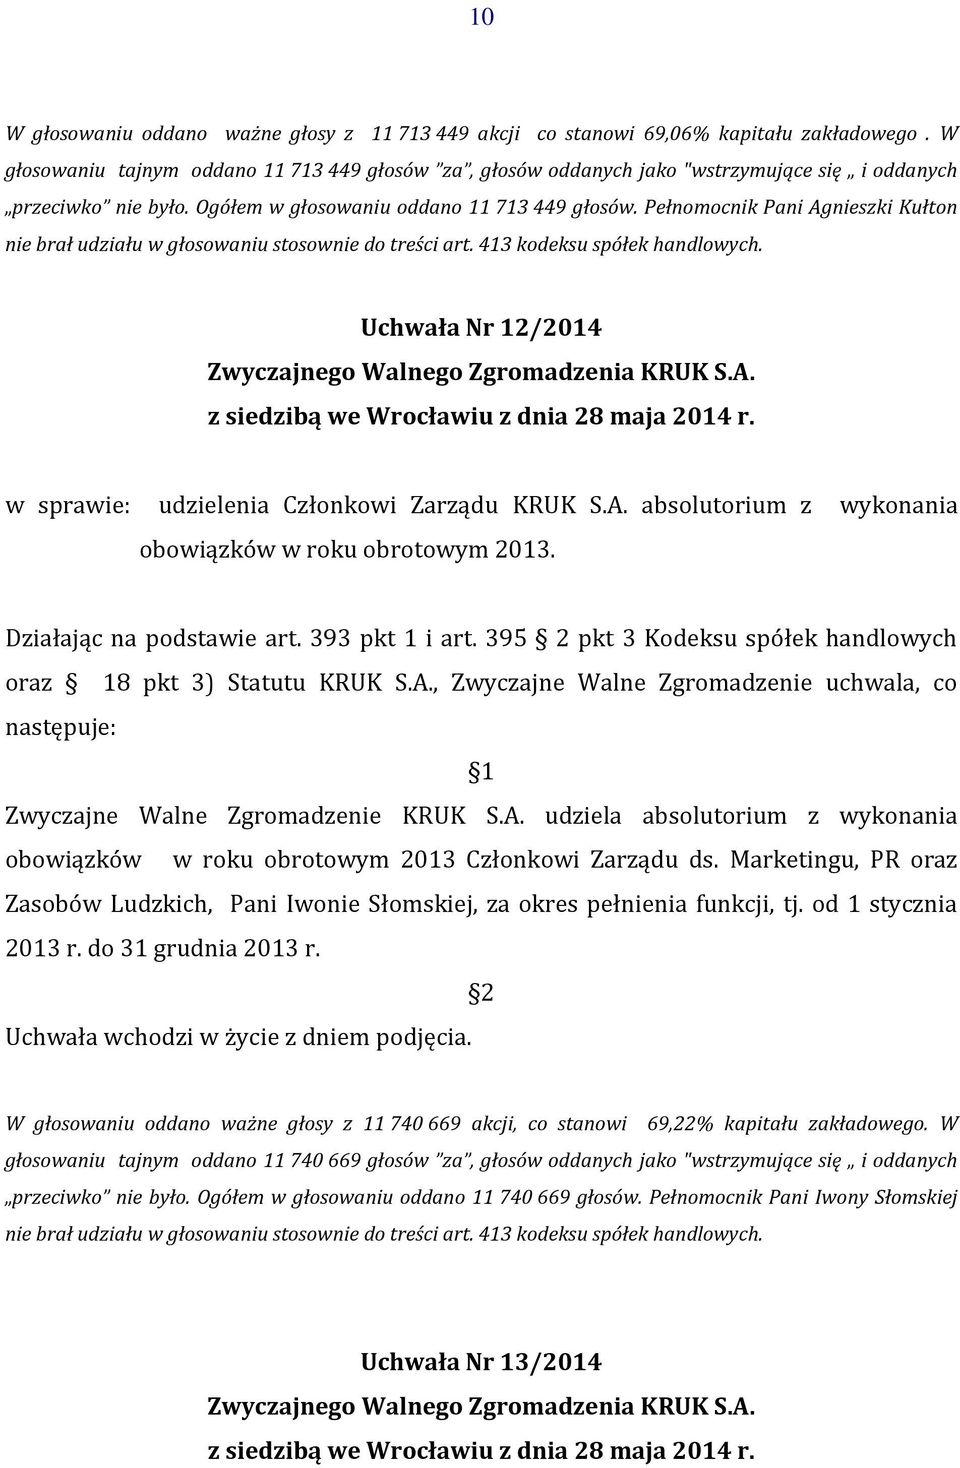 Pełnomocnik Pani Agnieszki Kułton nie brał udziału w głosowaniu stosownie do treści art. 413 kodeksu spółek handlowych. Uchwała Nr 12/2014 w sprawie: udzielenia Członkowi Zarządu KRUK S.A. absolutorium z wykonania obowiązków w roku obrotowym 2013.